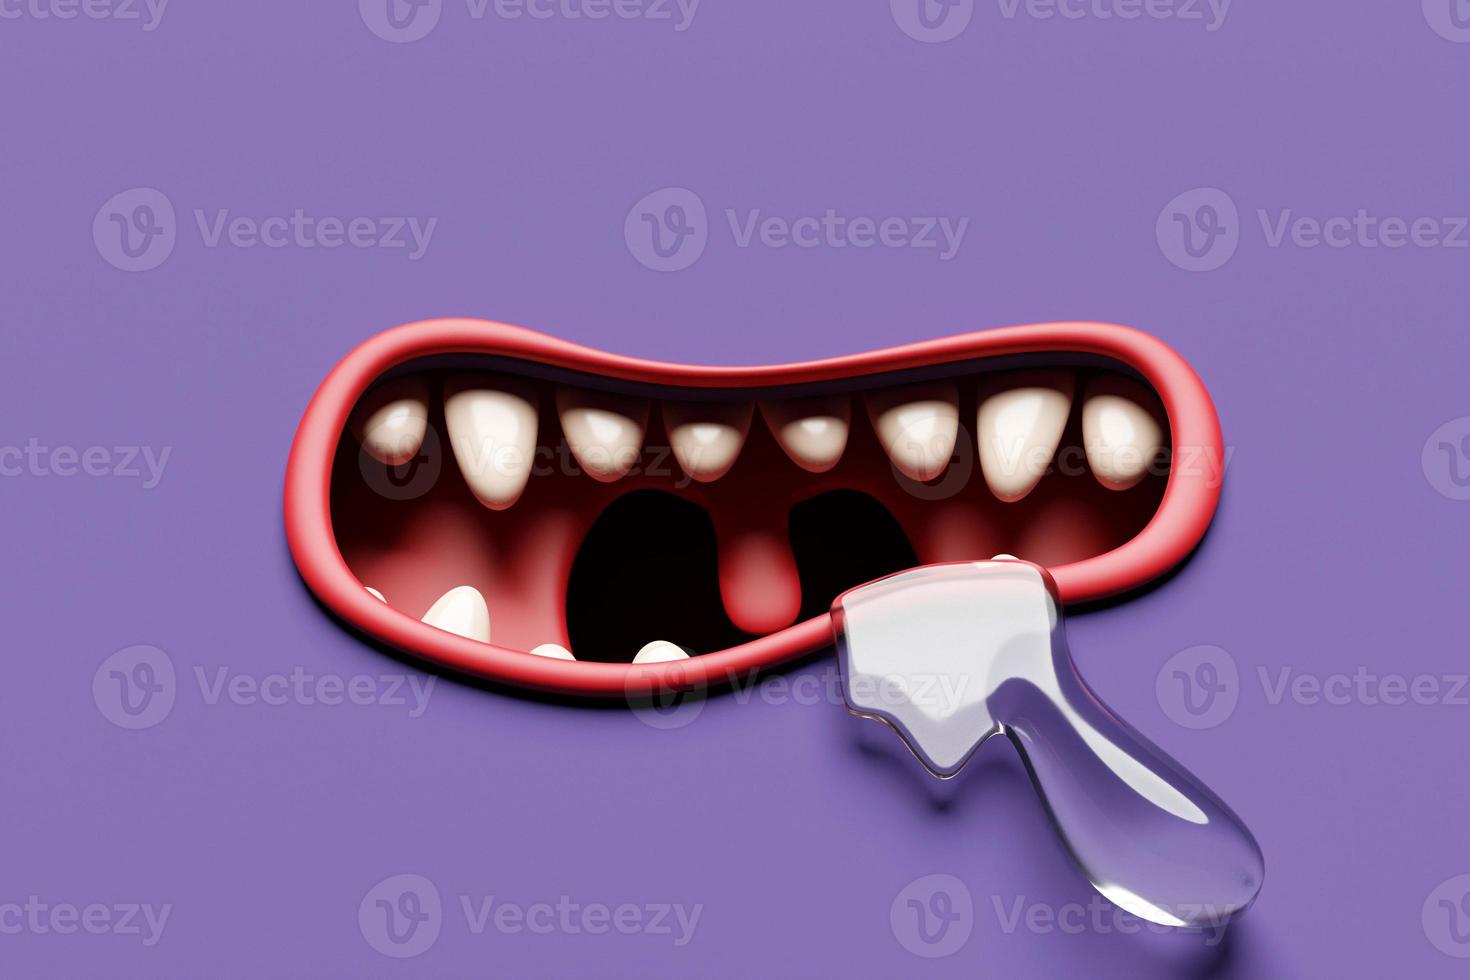 Boca con dientes de fantasía de ilustración 3d en colores brillantes. boca de monstruo o bestia gritando. cara de dibujos animados enojado foto